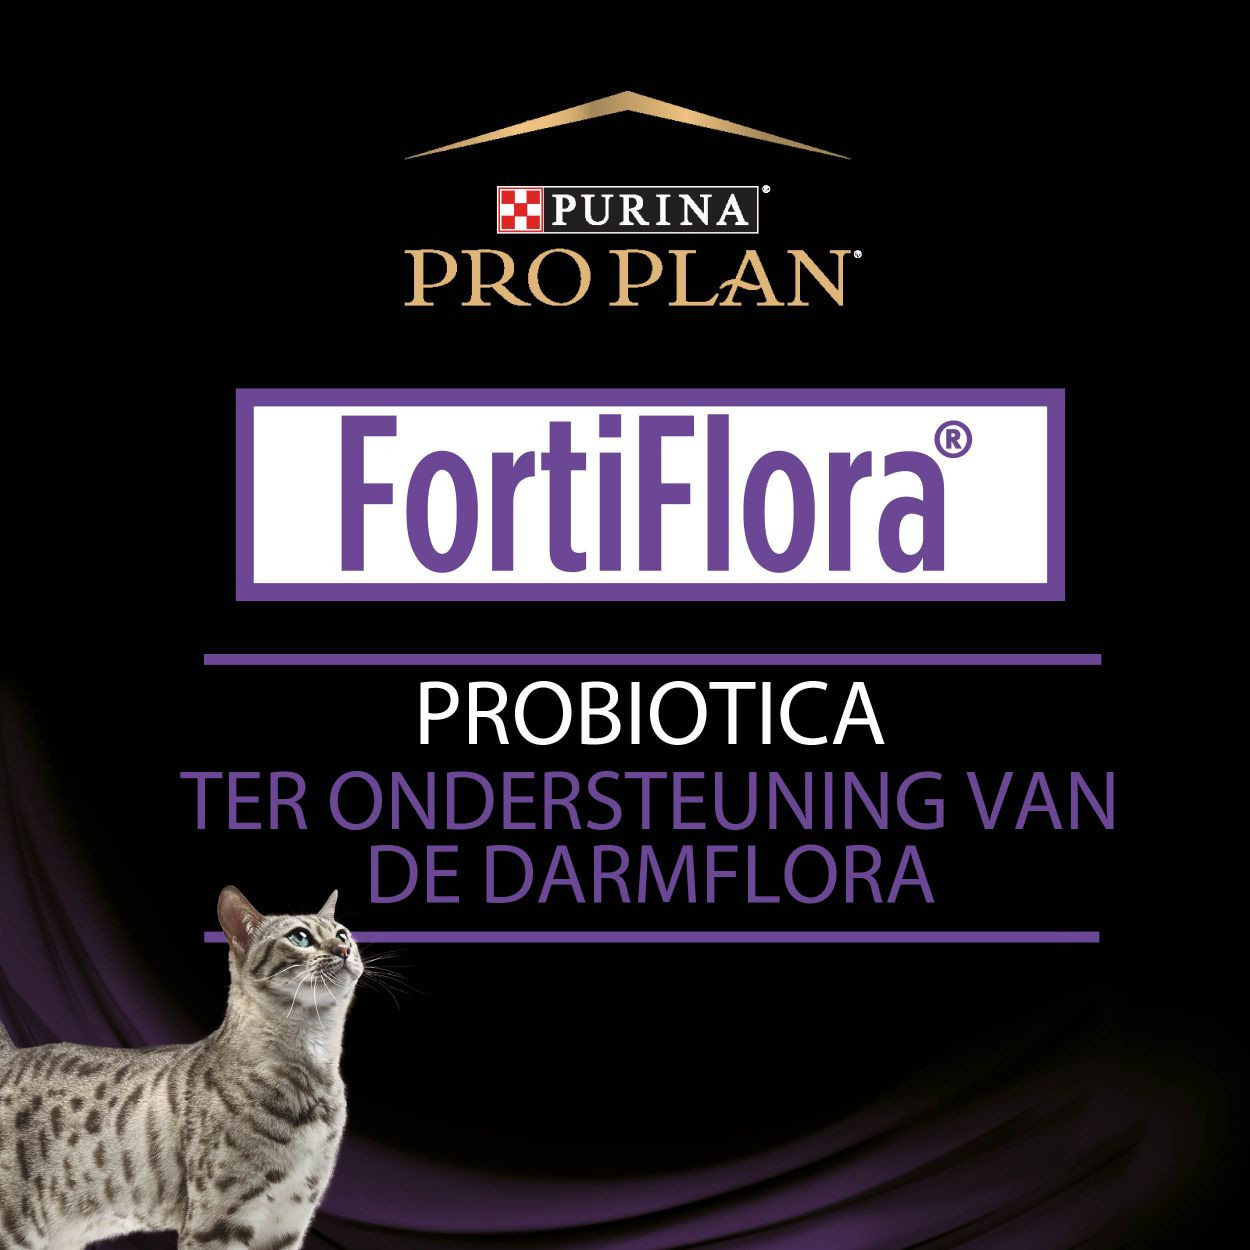 Purina Plan FortiFlora Feline Probiotic supplement